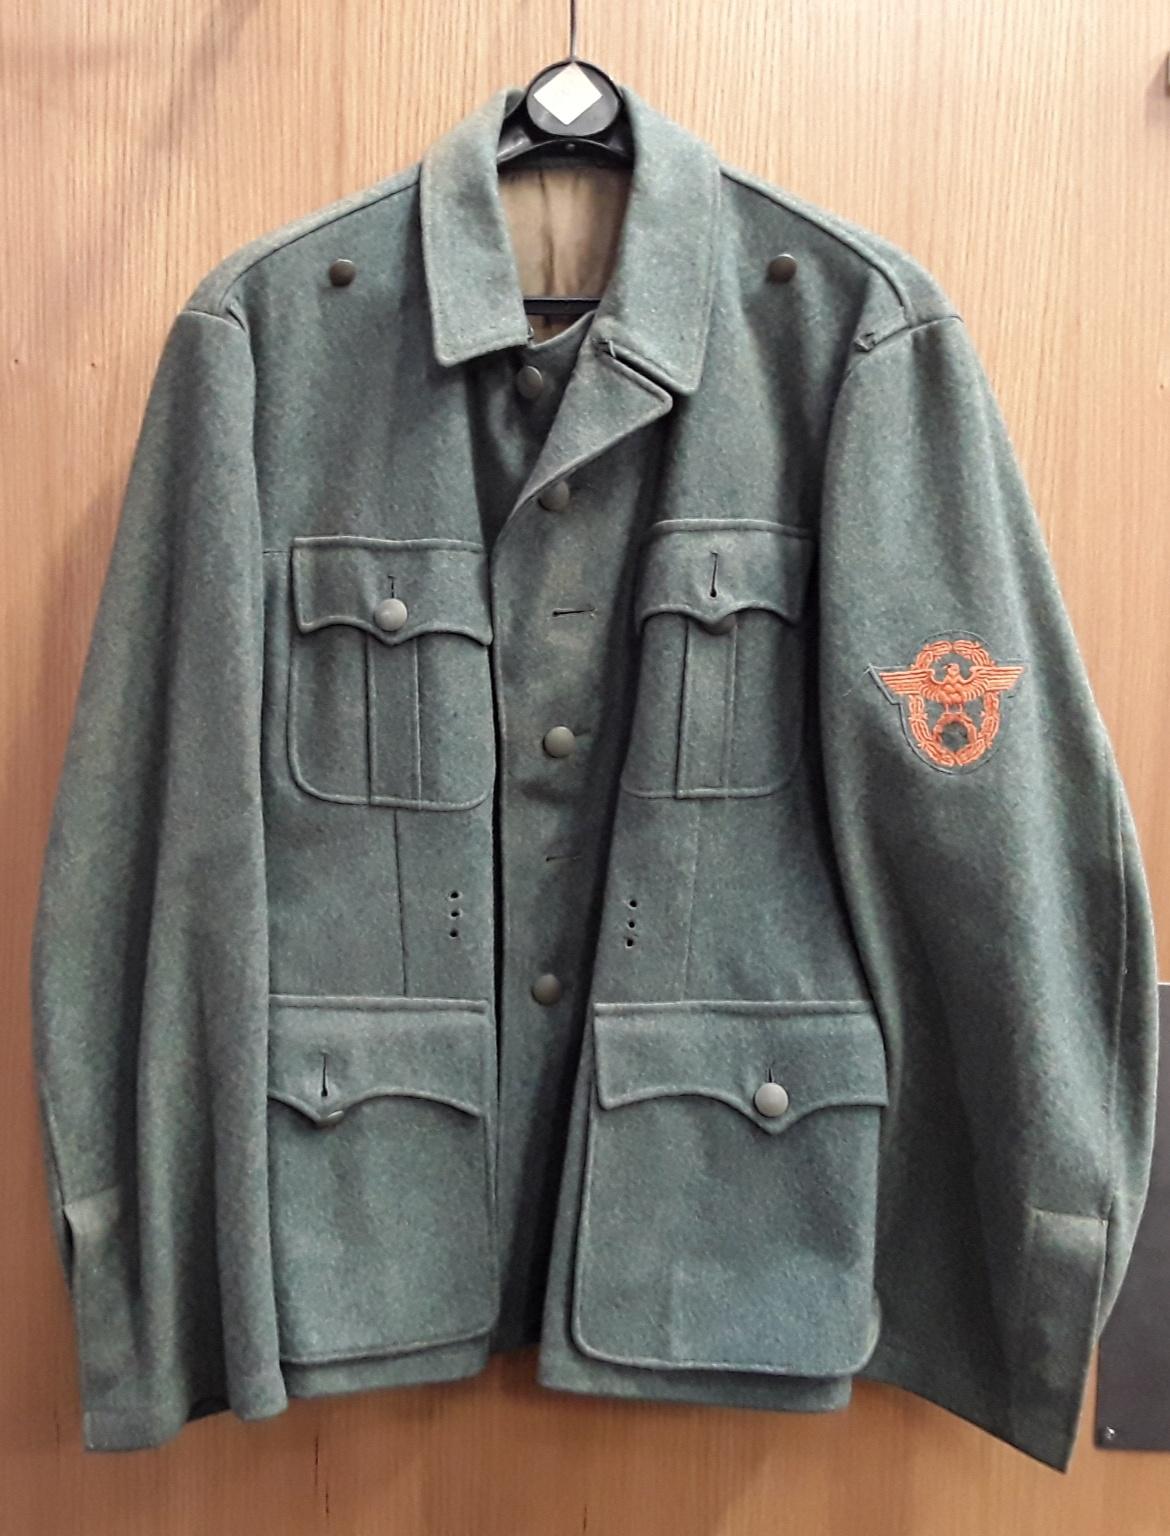 WWII Nazi military uniform jacket. - Image 2 of 8